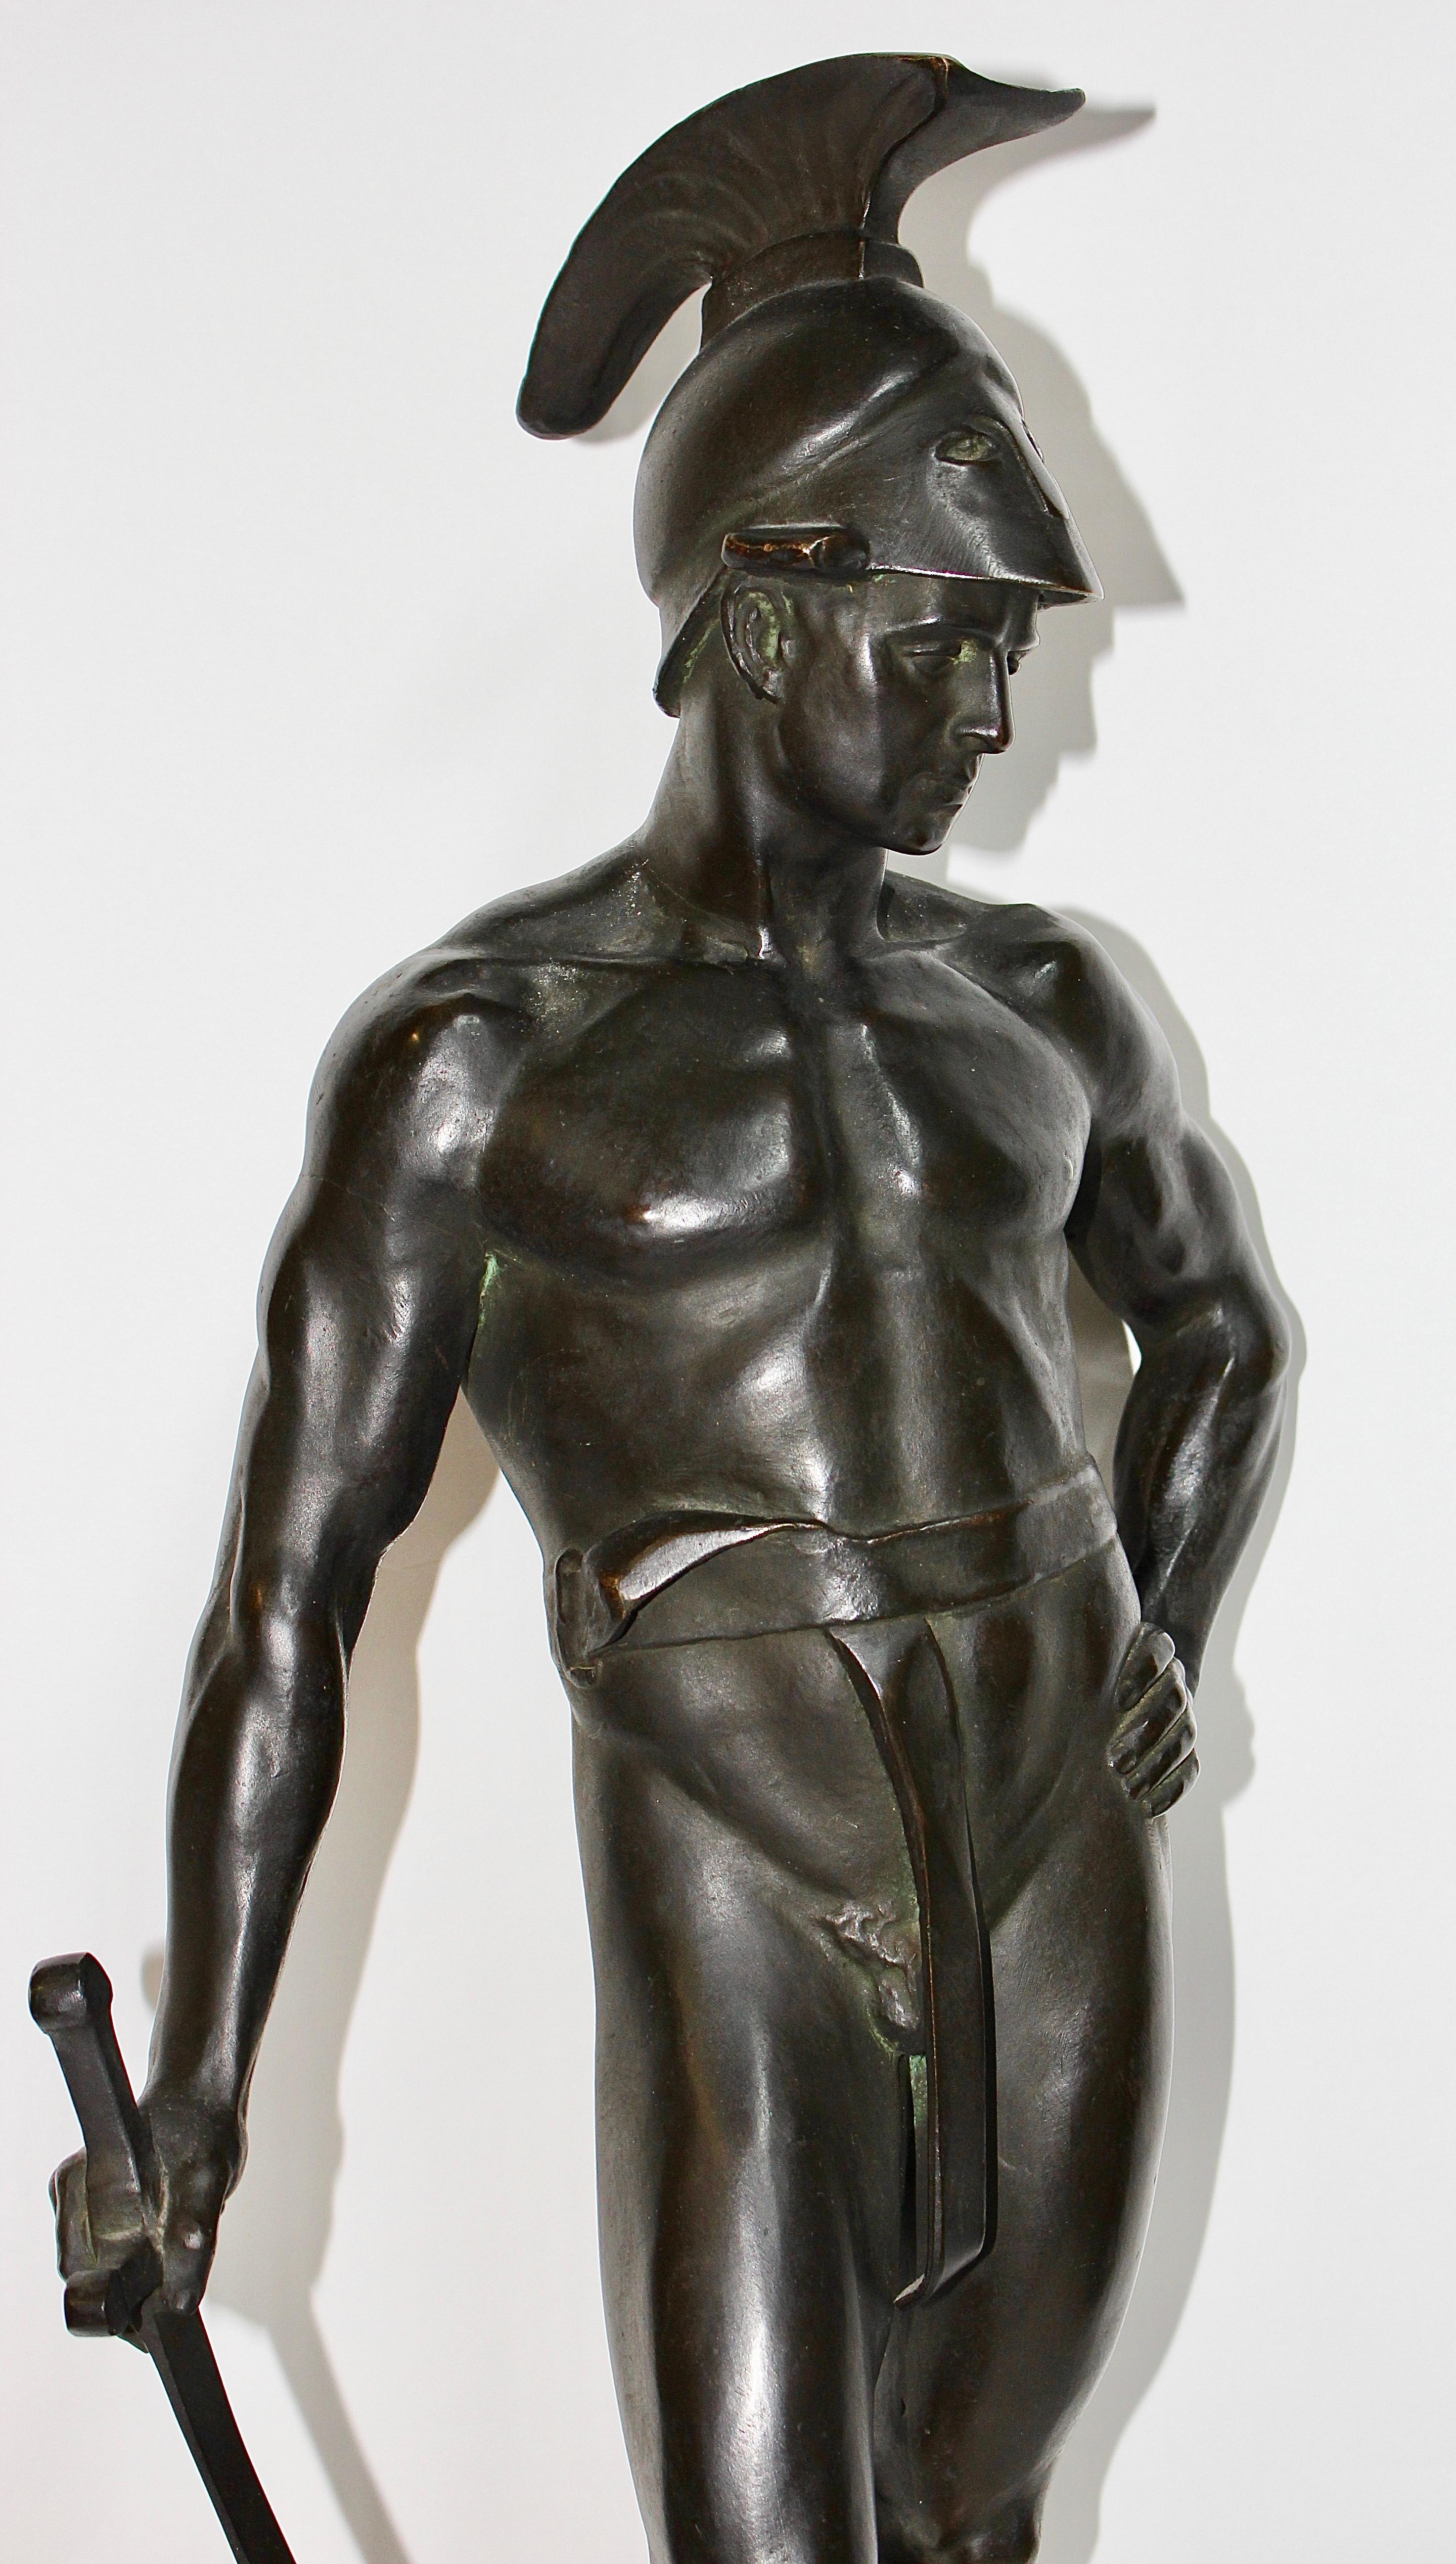 Grande et décorative sculpture en bronze d'un guerrier spartiate.
Par le professeur Victor Heinrich Seifert. Signé.

Excellent chef-d'œuvre. Sur socle en marbre.